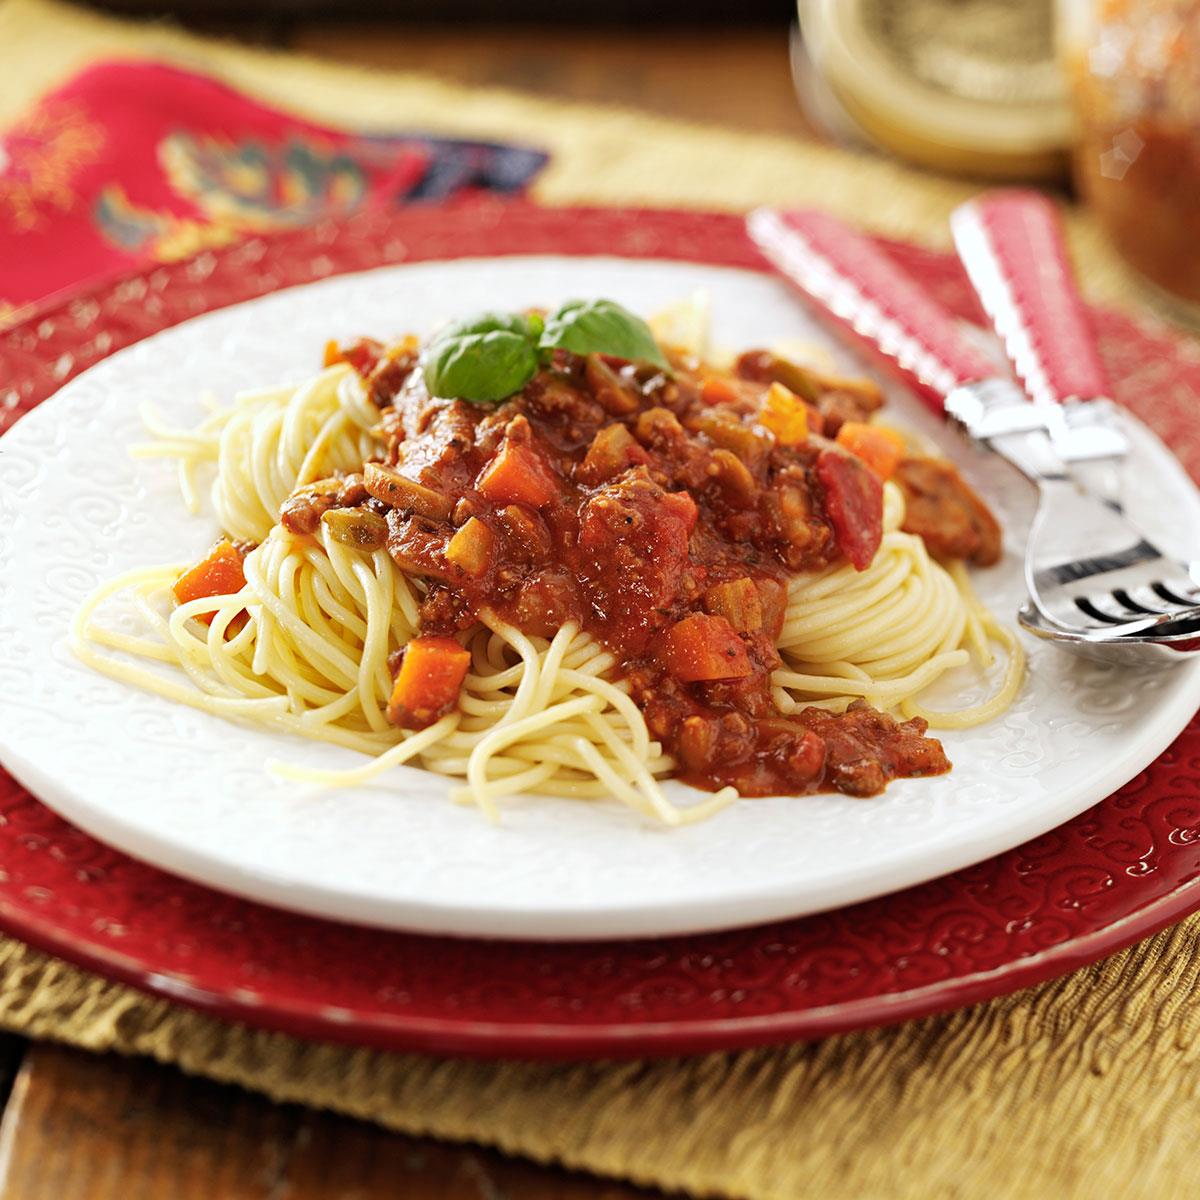 Spaghetti Sauce image